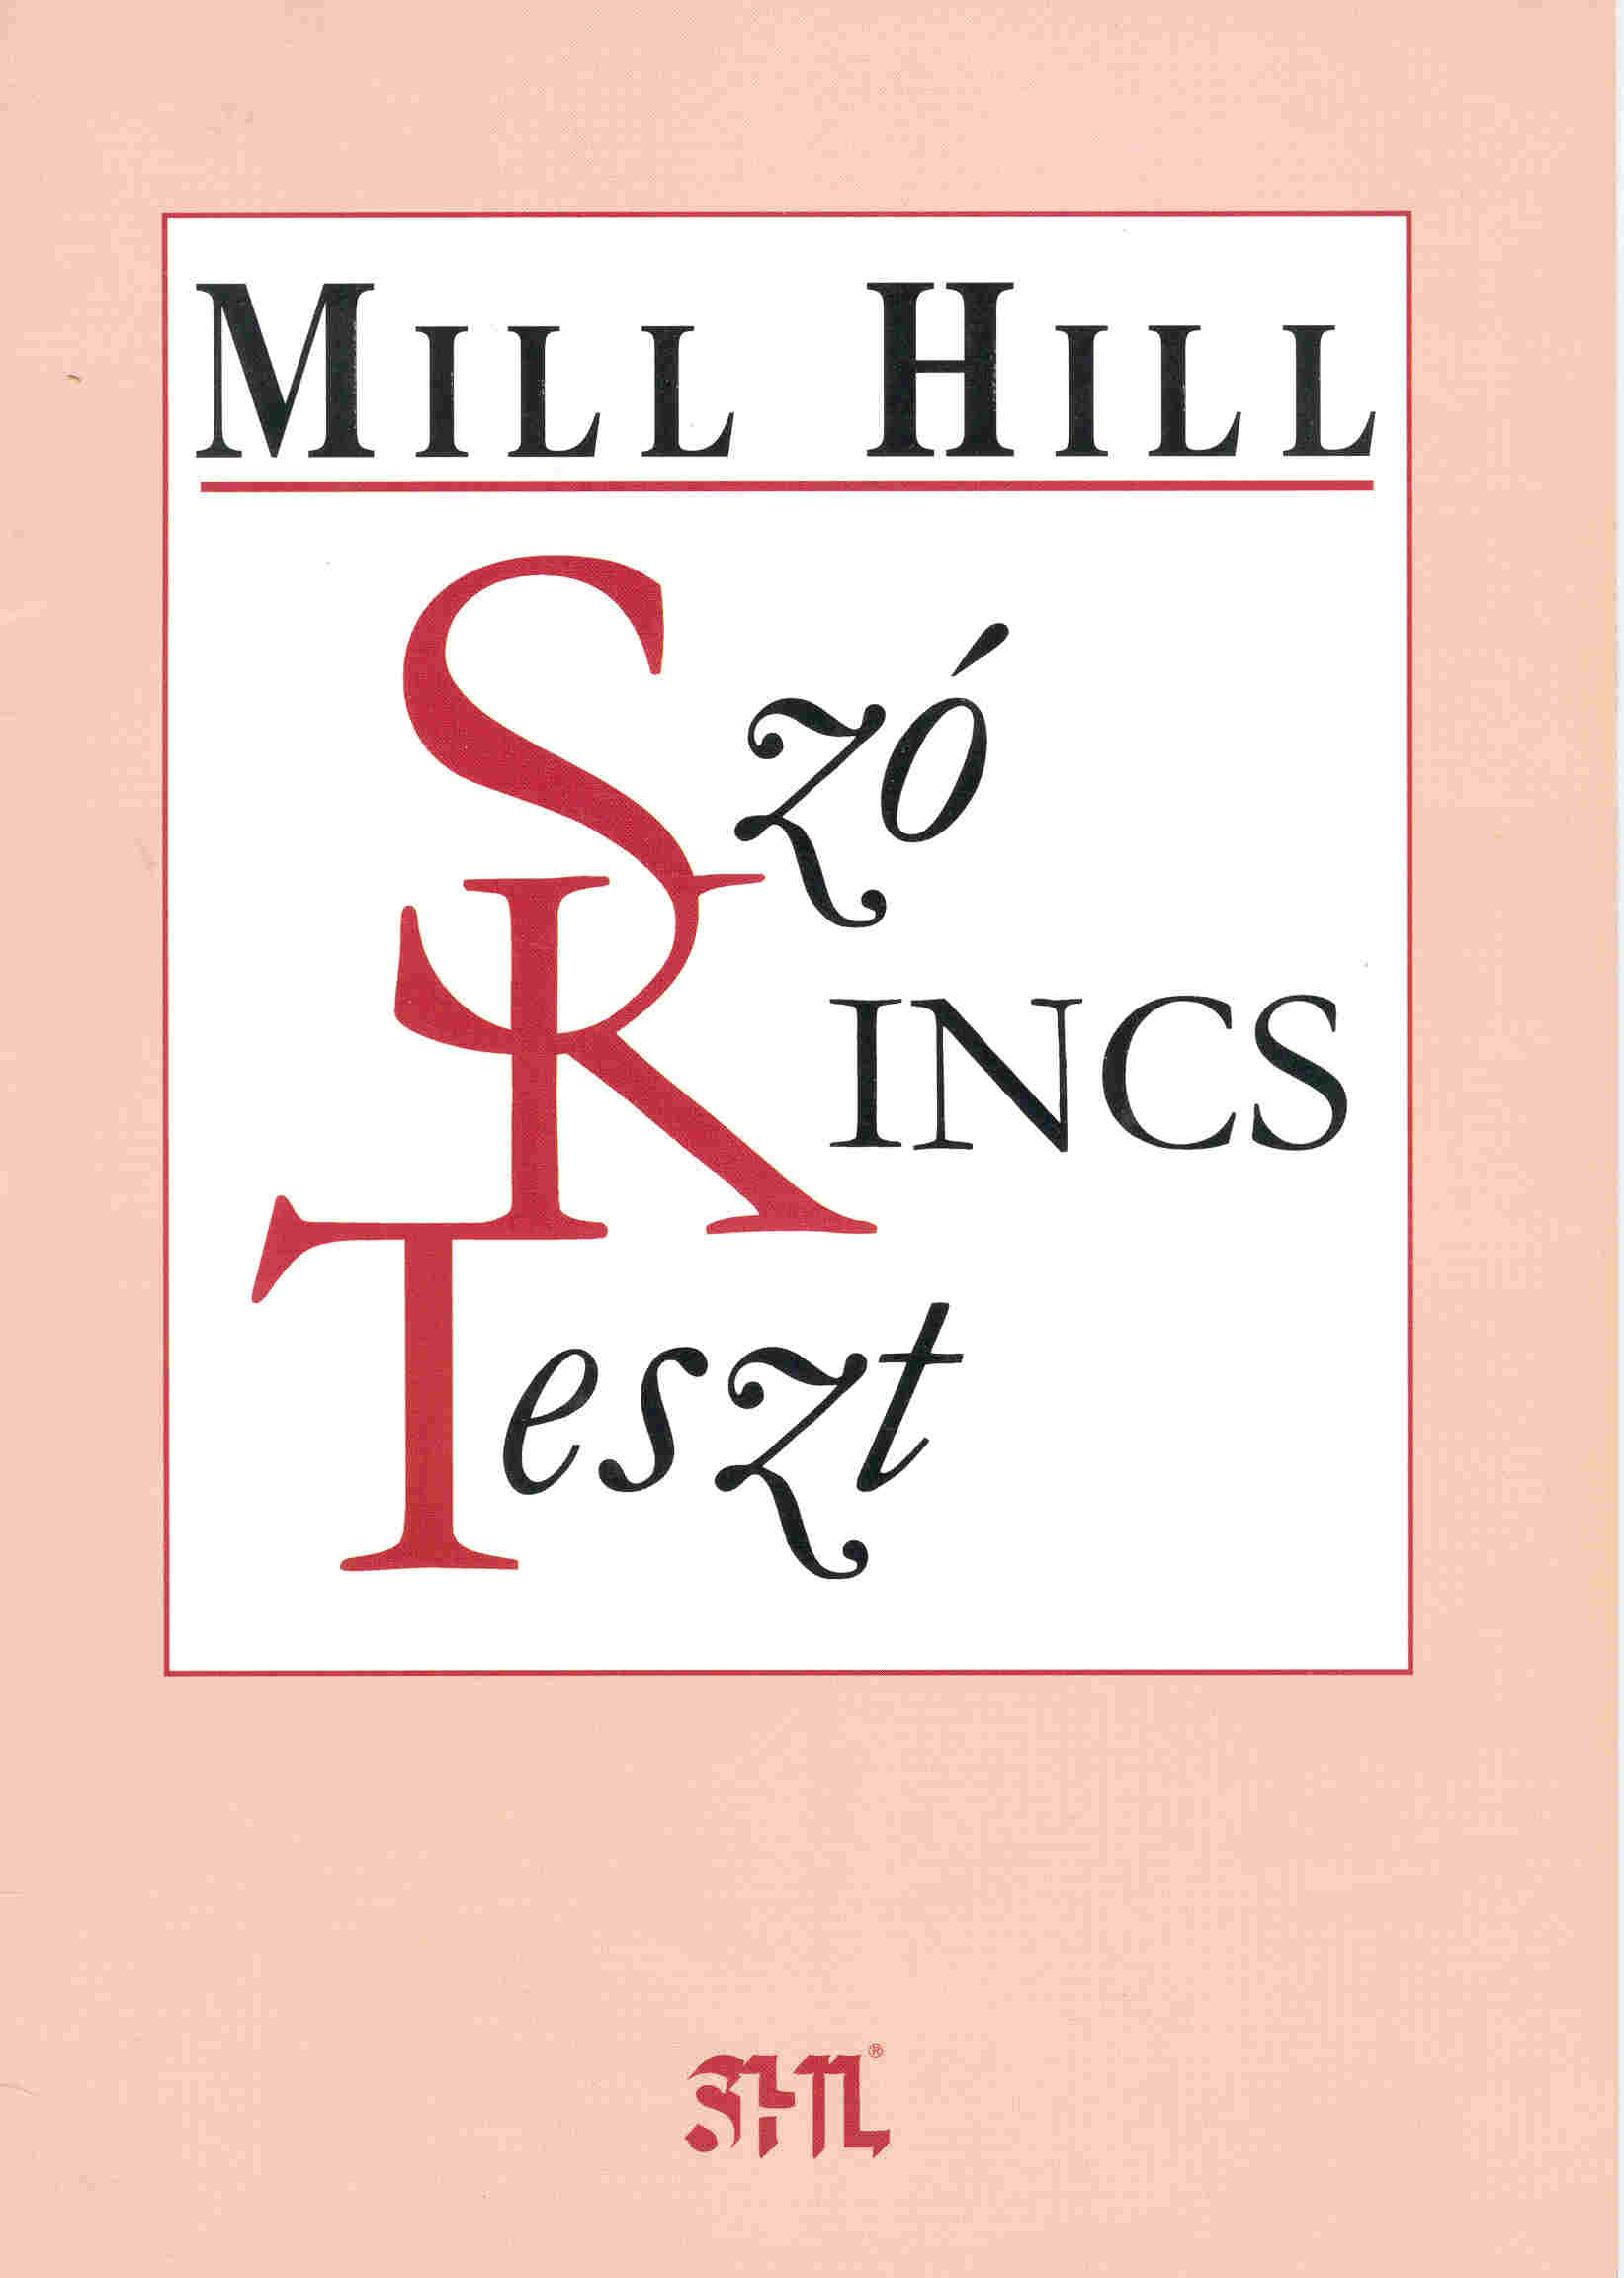 Mill Hill Szókincsteszt